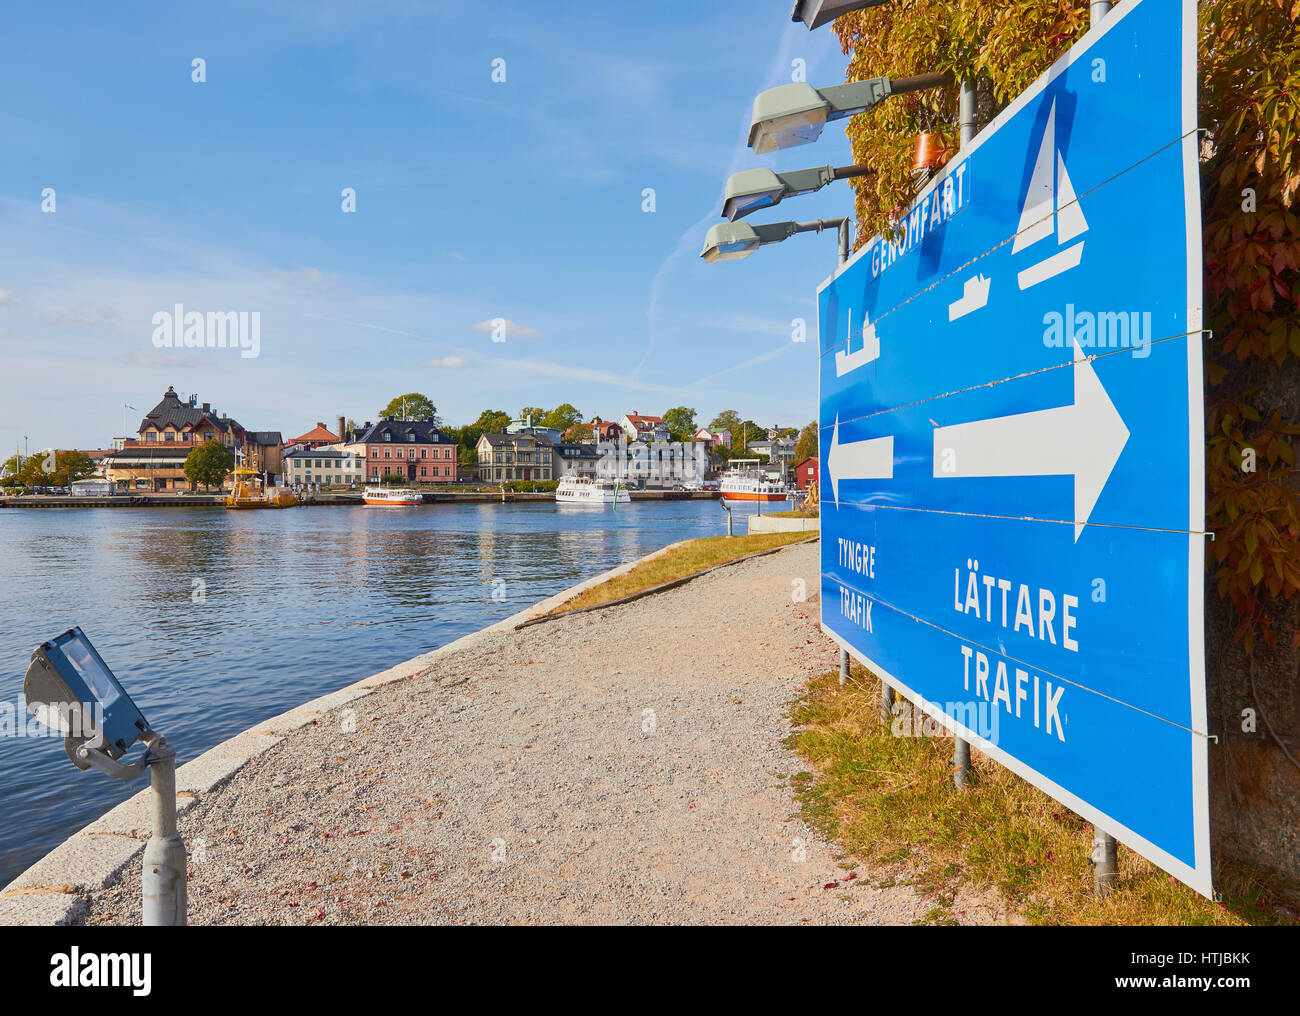 Informations Inscription pour la circulation des bateaux sur l'île de Vaxholm Fotress avec ville de Vaxholm en arrière-plan, la Suède, Scandinavie Banque D'Images